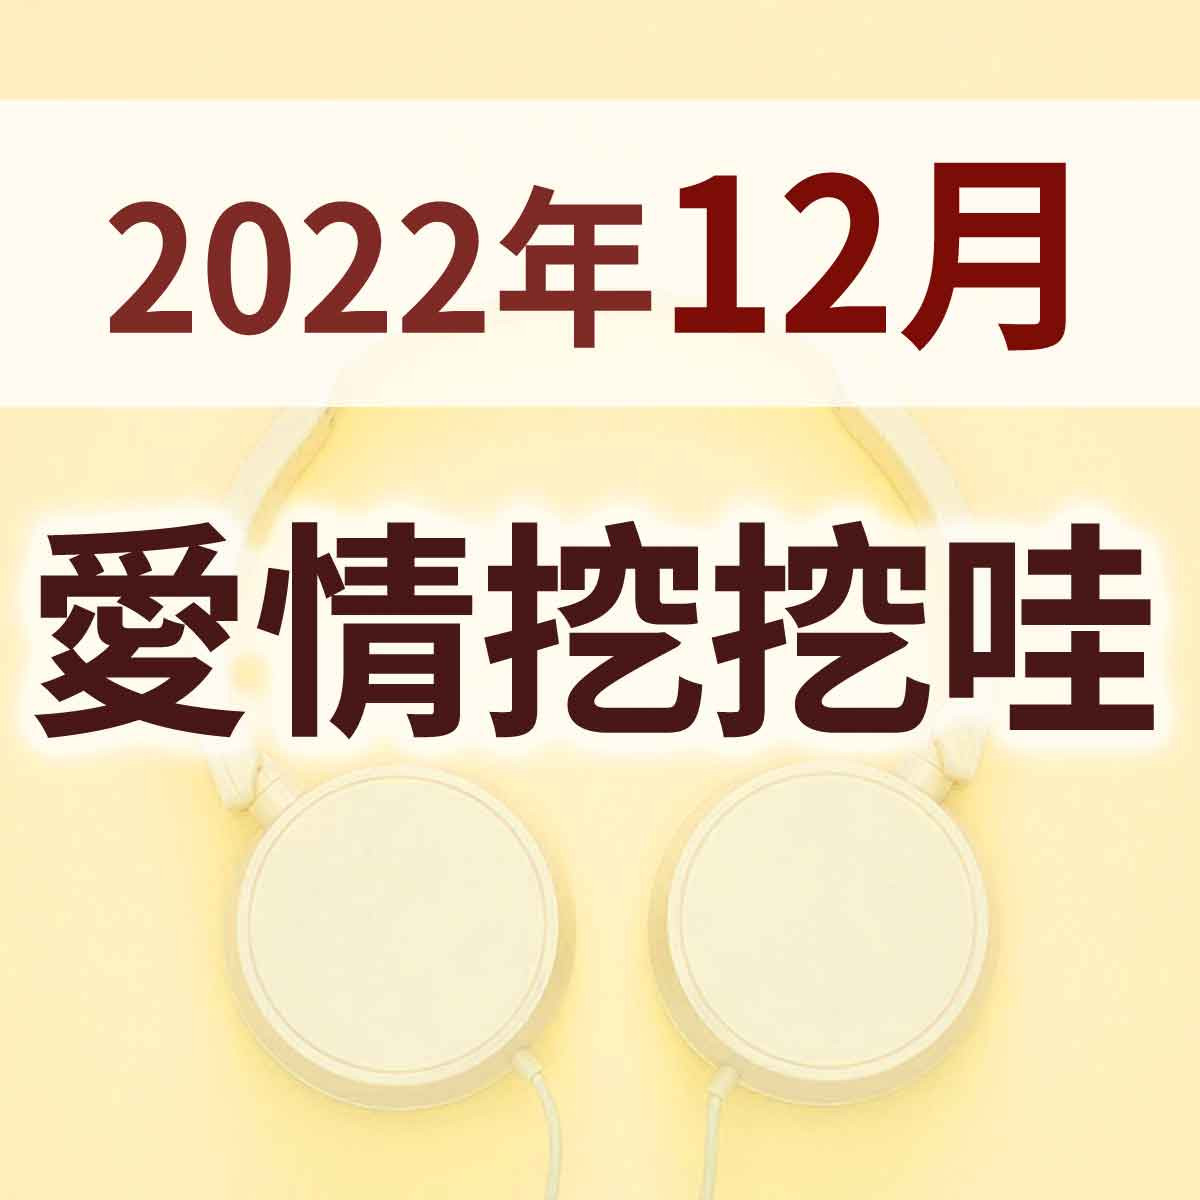 2022年12月 - 01-夫妻之間要分的多清楚封面圖